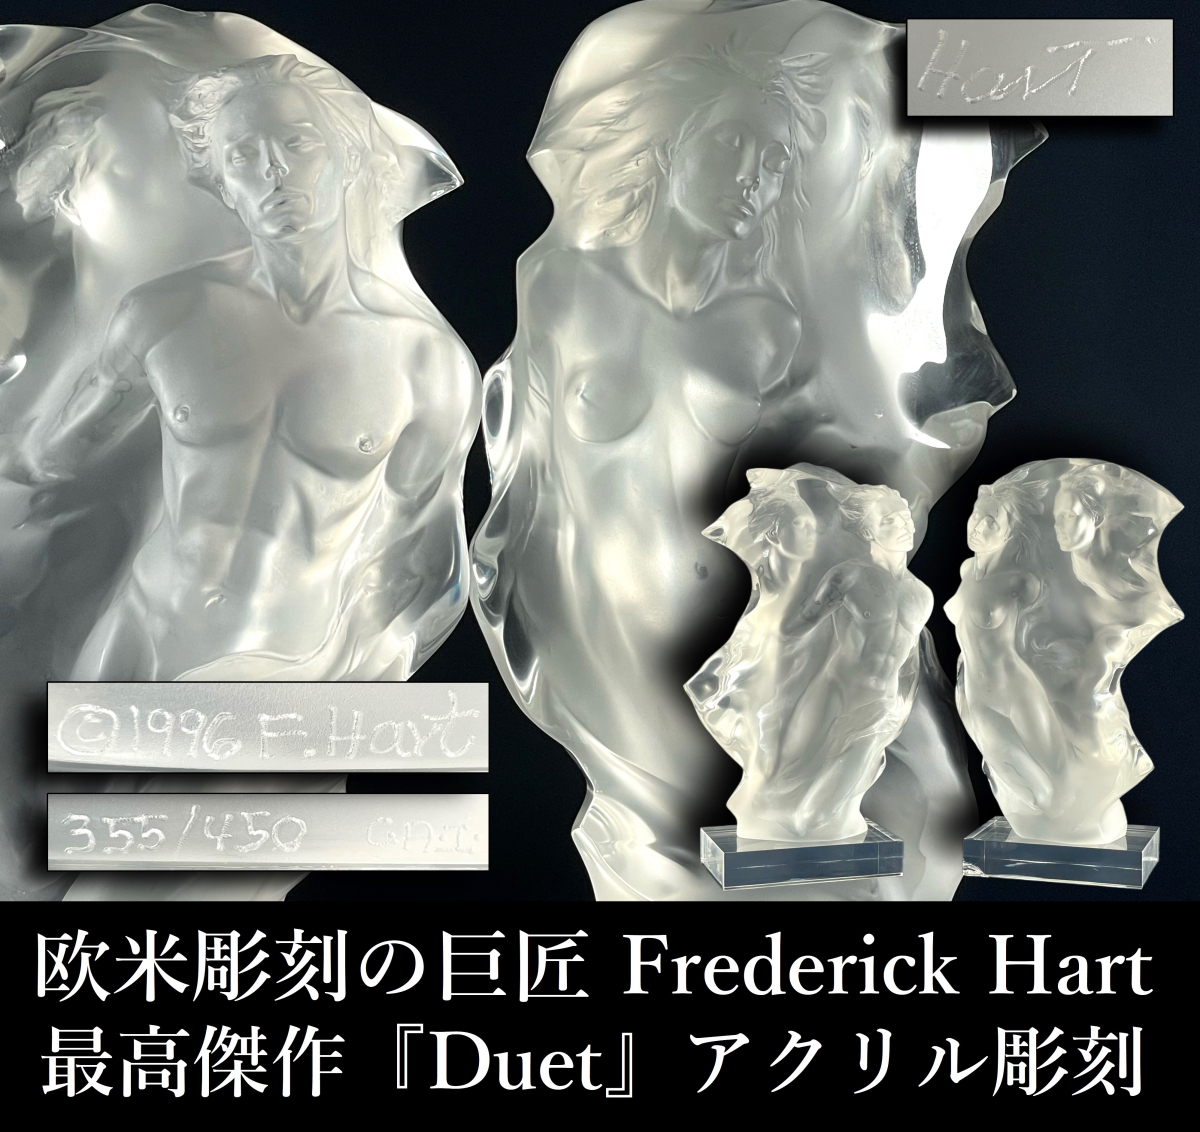 【晃】欧米彫刻の巨匠 Frederick Hart フレデリックハート 最高傑作 『Duet』 アクリル彫刻 男女像 1996年 希少な晩年作品 600万円購入品